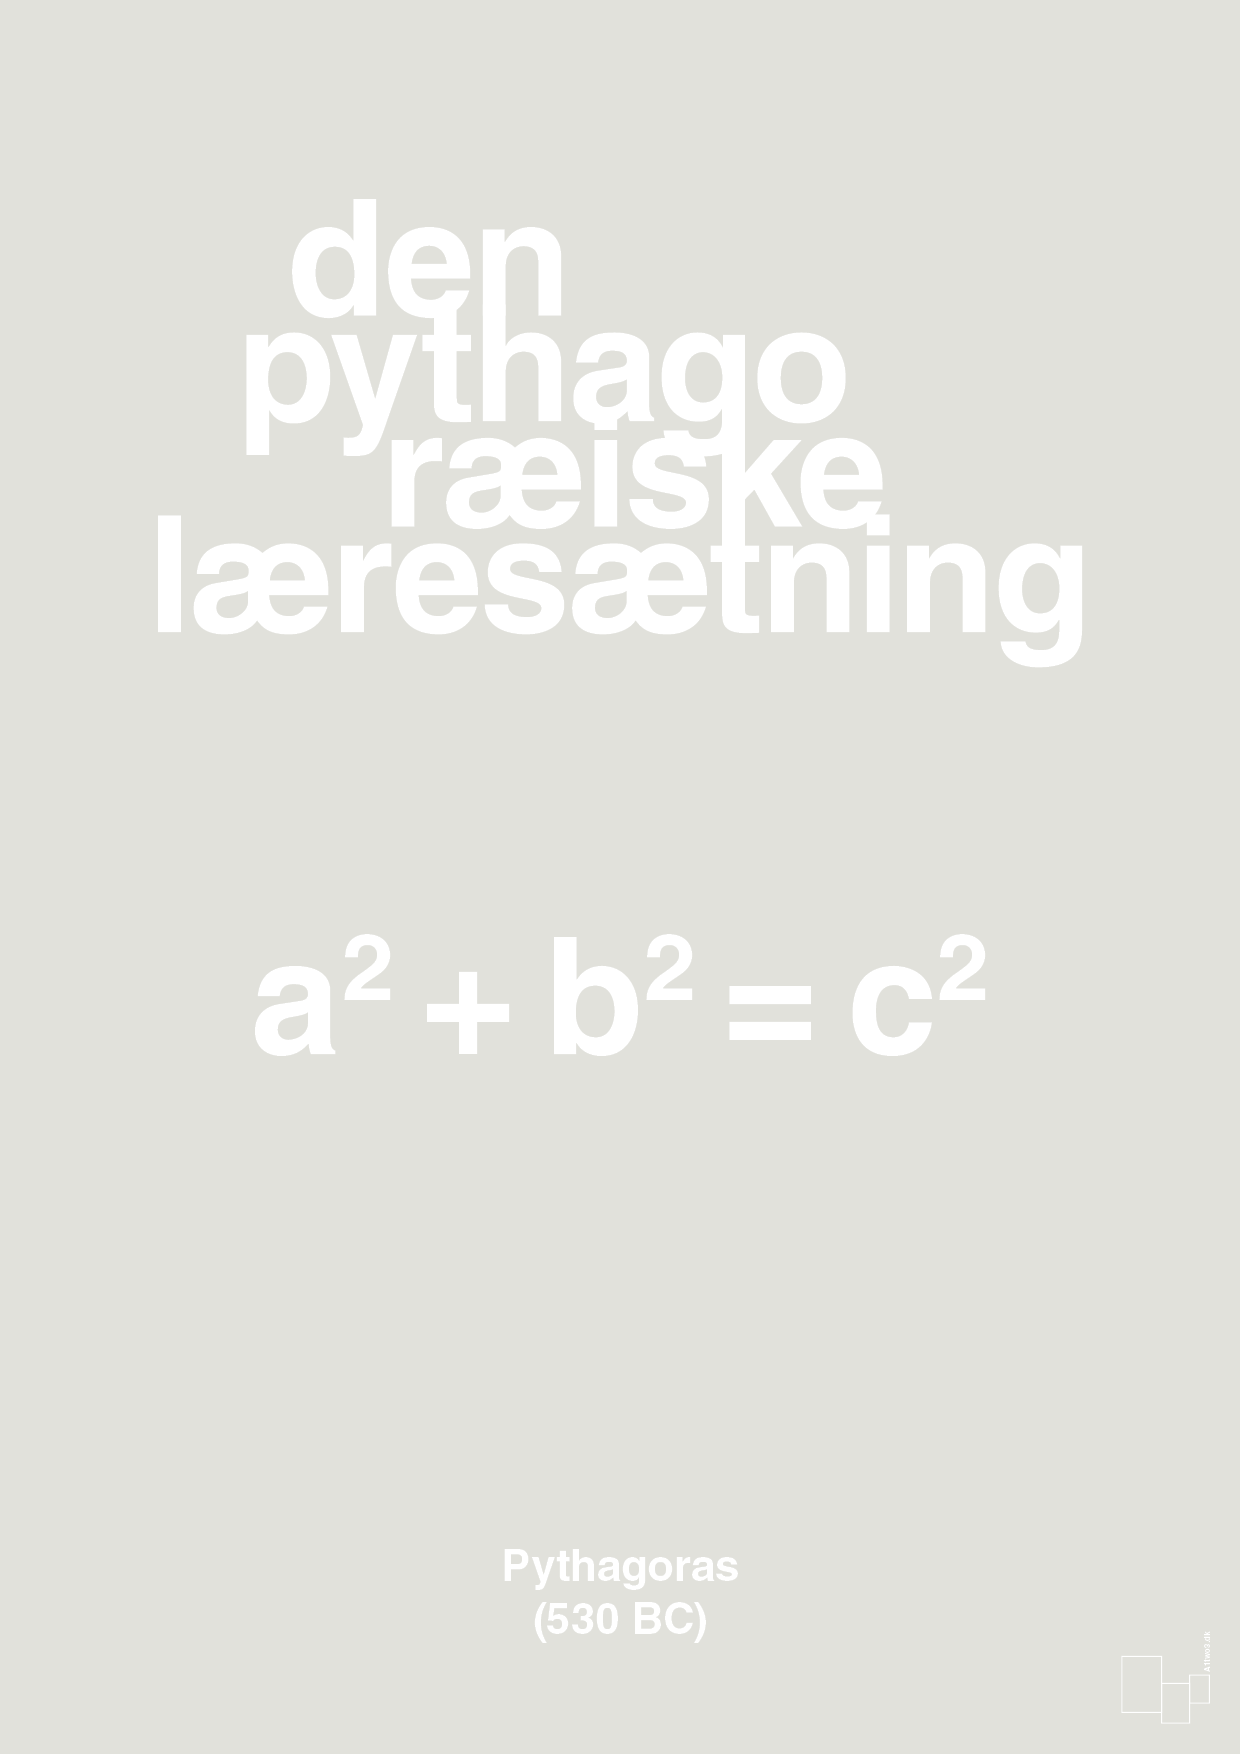 den pythagoræiske læresætning - Plakat med Videnskab i Painters White